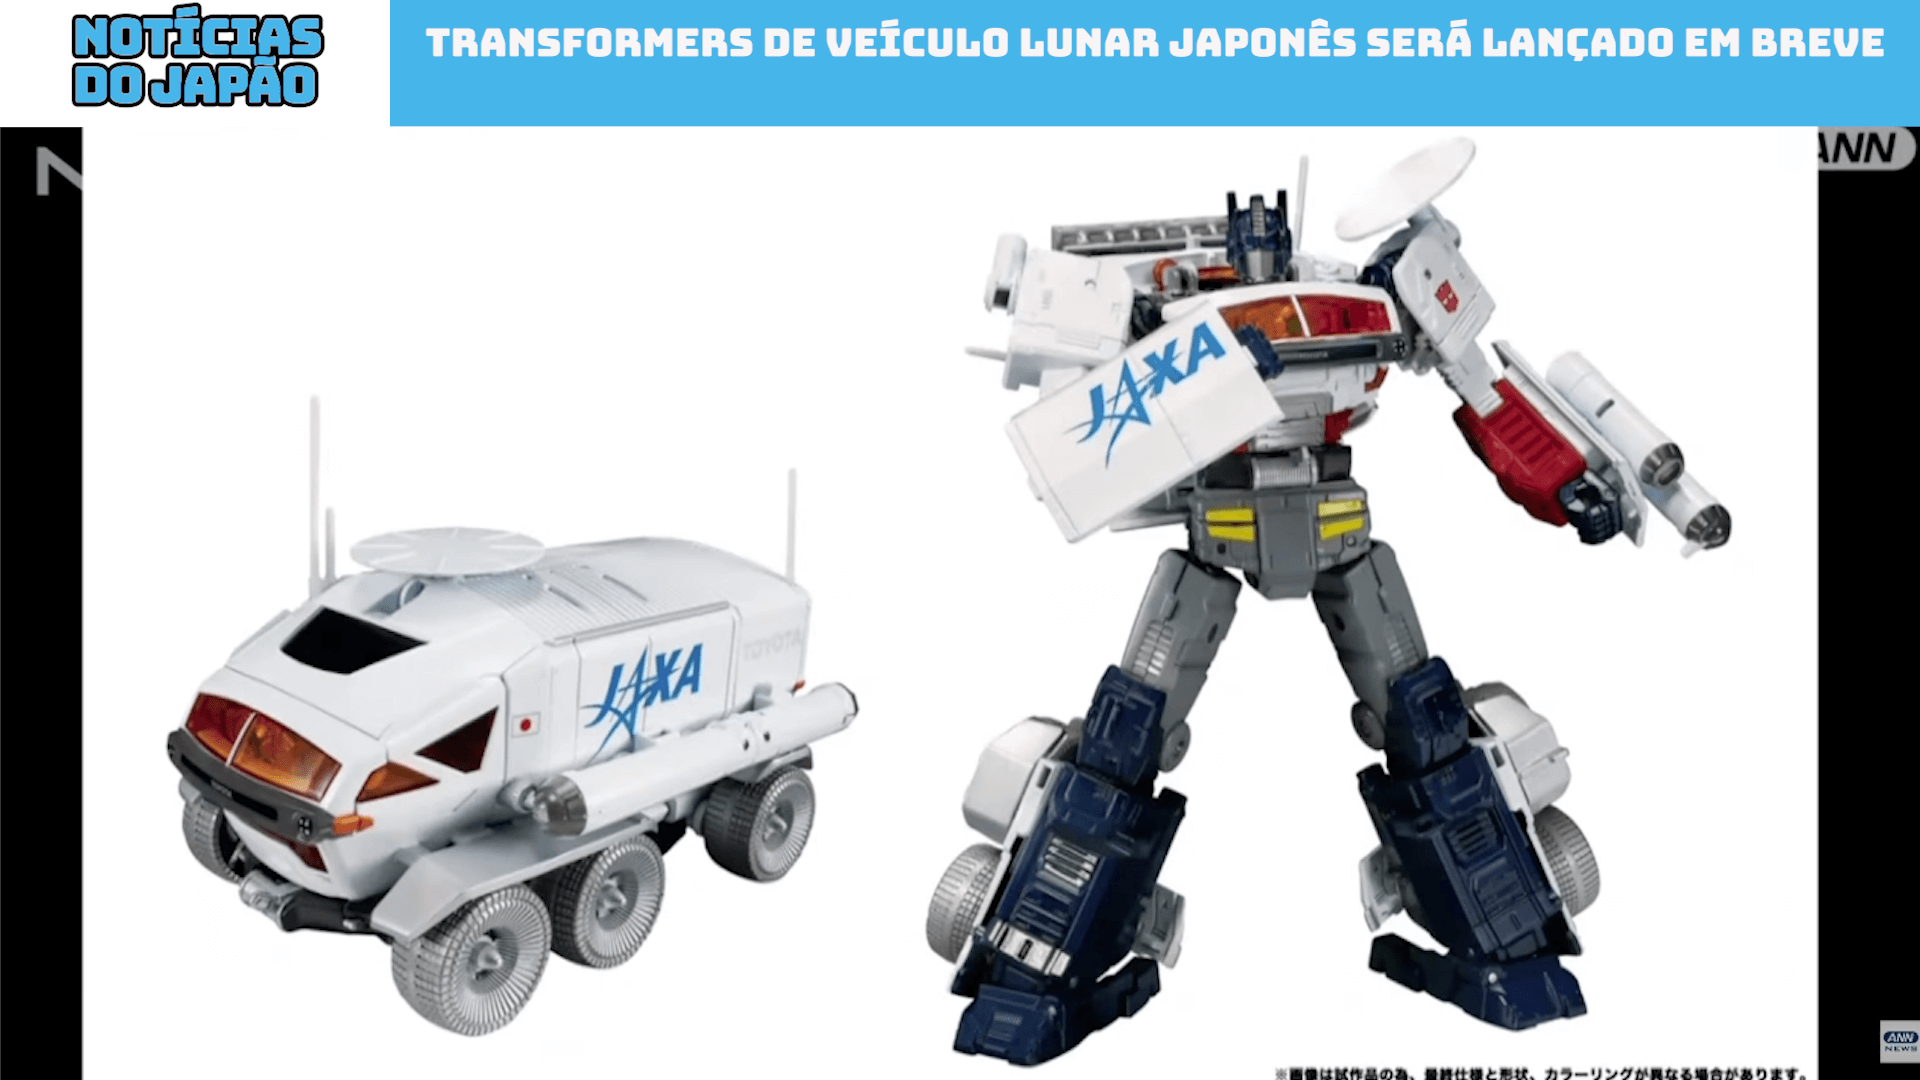 Transformers de veículo lunar japonês será lançado em breve 